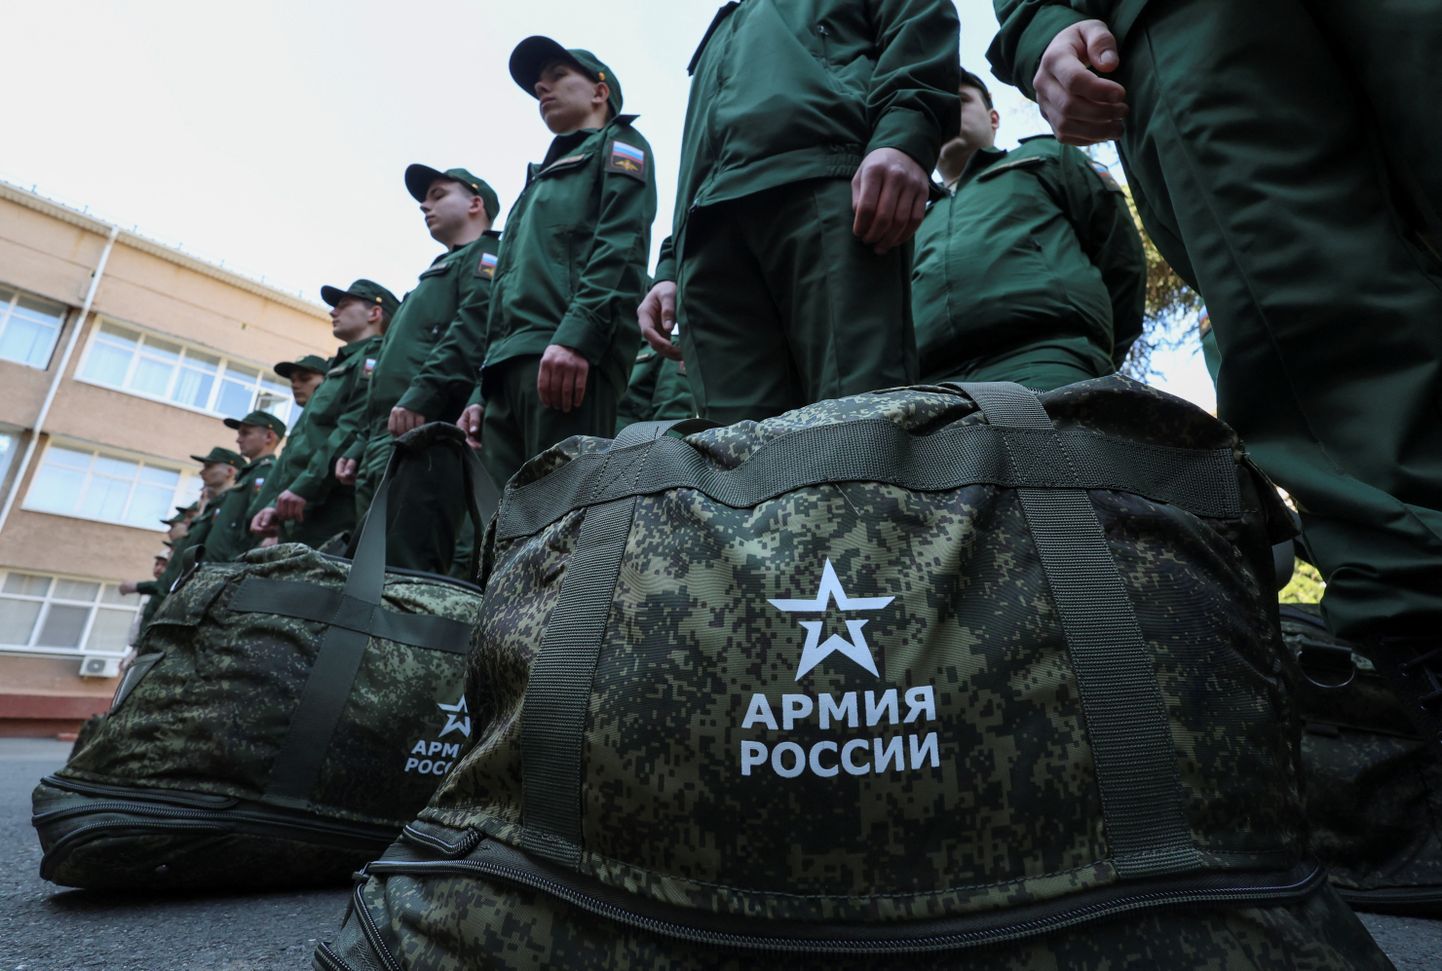 Vene sõjaväekutse saanud selle aasta aprillis Krimmis Simferopolis.